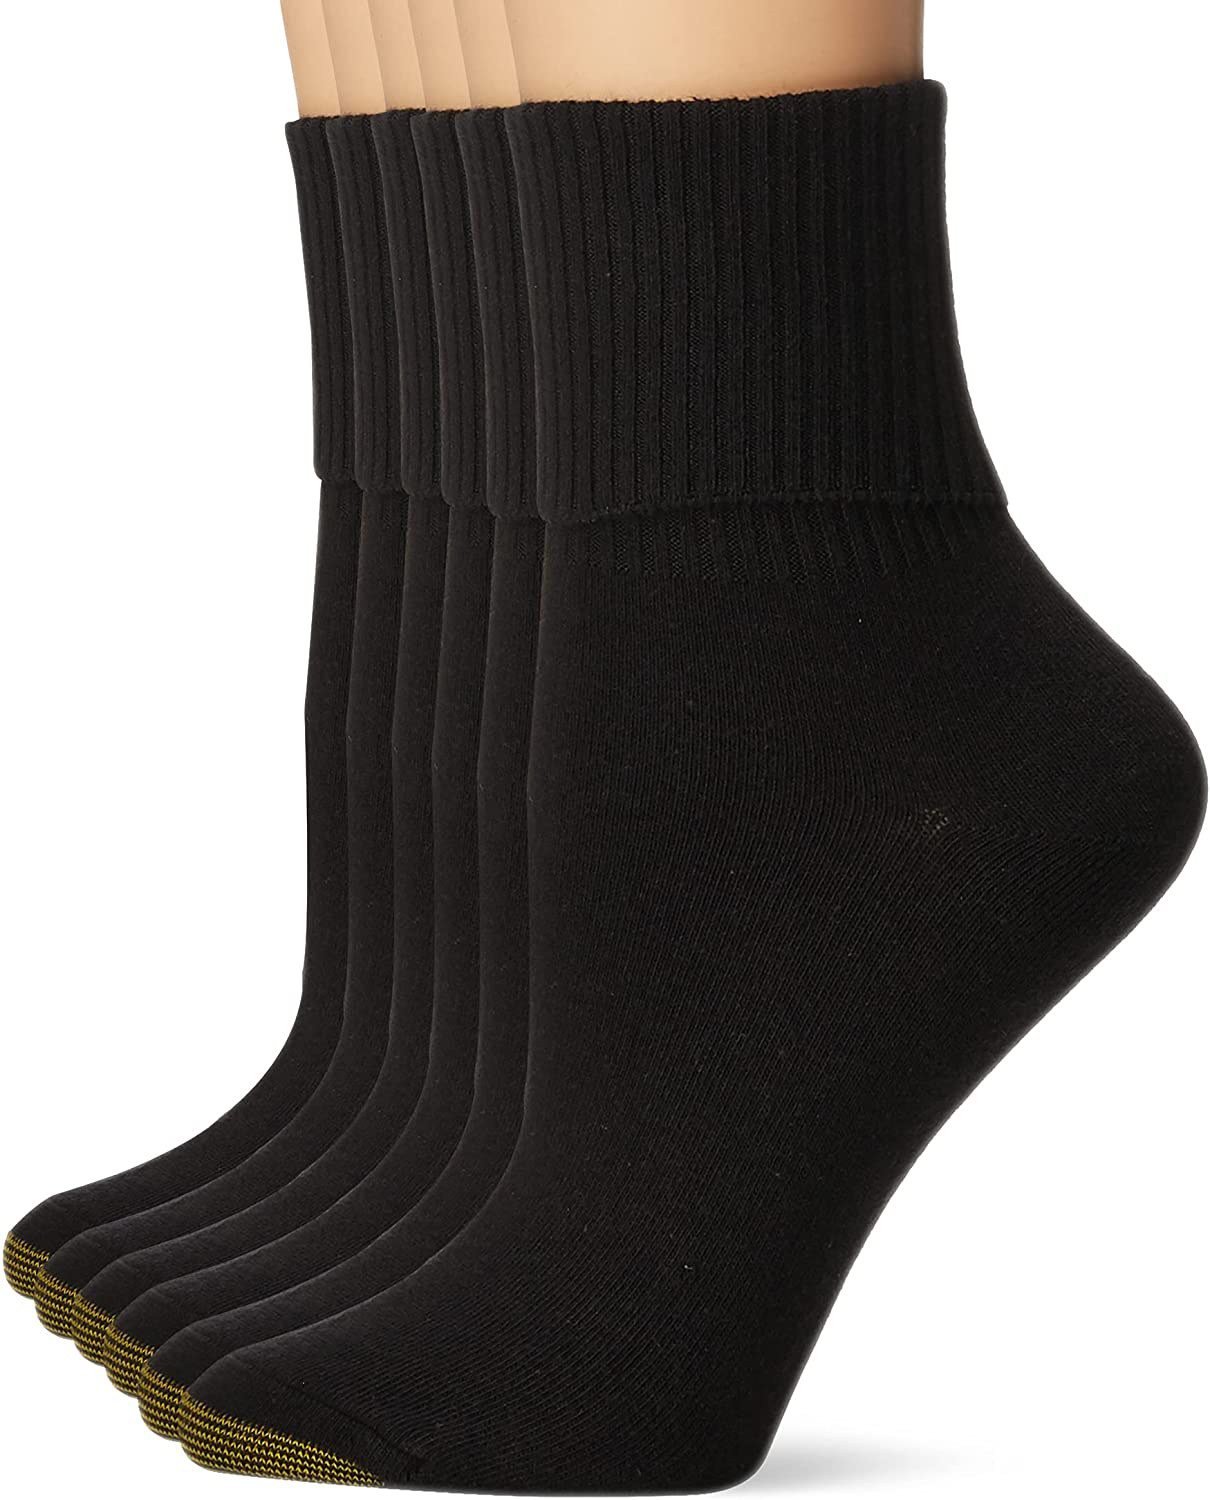 Goldtoe Turn Cuff Socks 6 Pk., Socks & Tights, Clothing & Accessories